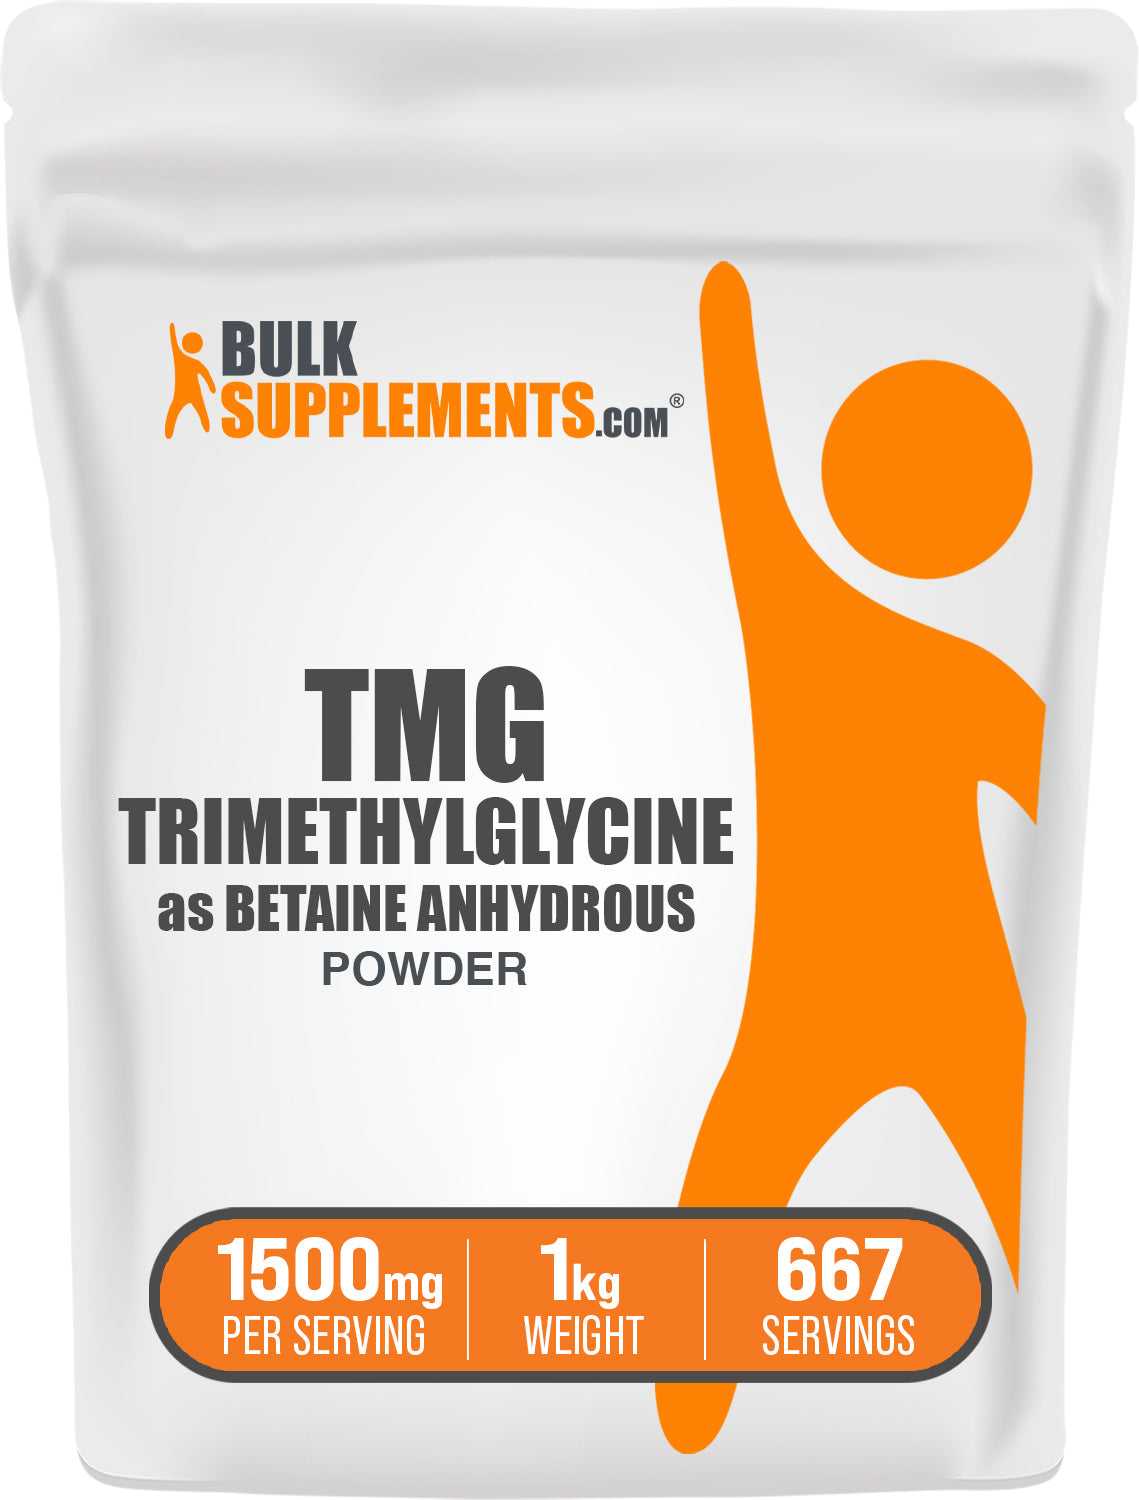 1kg tmg supplements